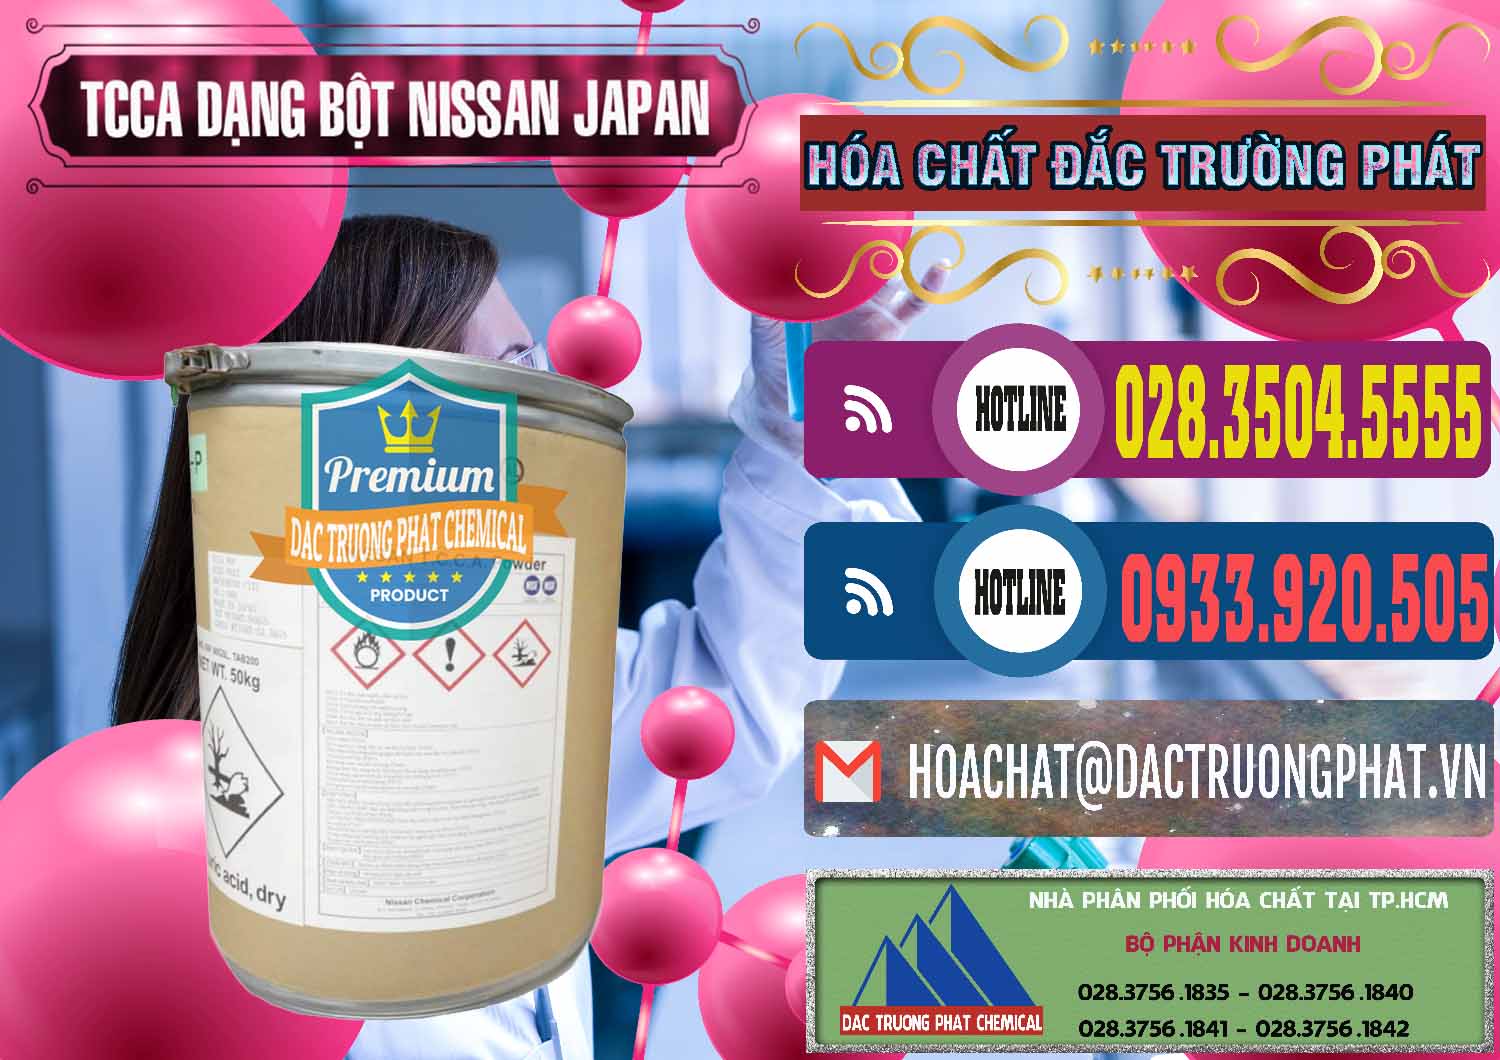 Chuyên bán ( cung cấp ) TCCA - Acid Trichloroisocyanuric 90% Dạng Bột Nissan Nhật Bản Japan - 0375 - Nhà cung cấp - phân phối hóa chất tại TP.HCM - muabanhoachat.com.vn